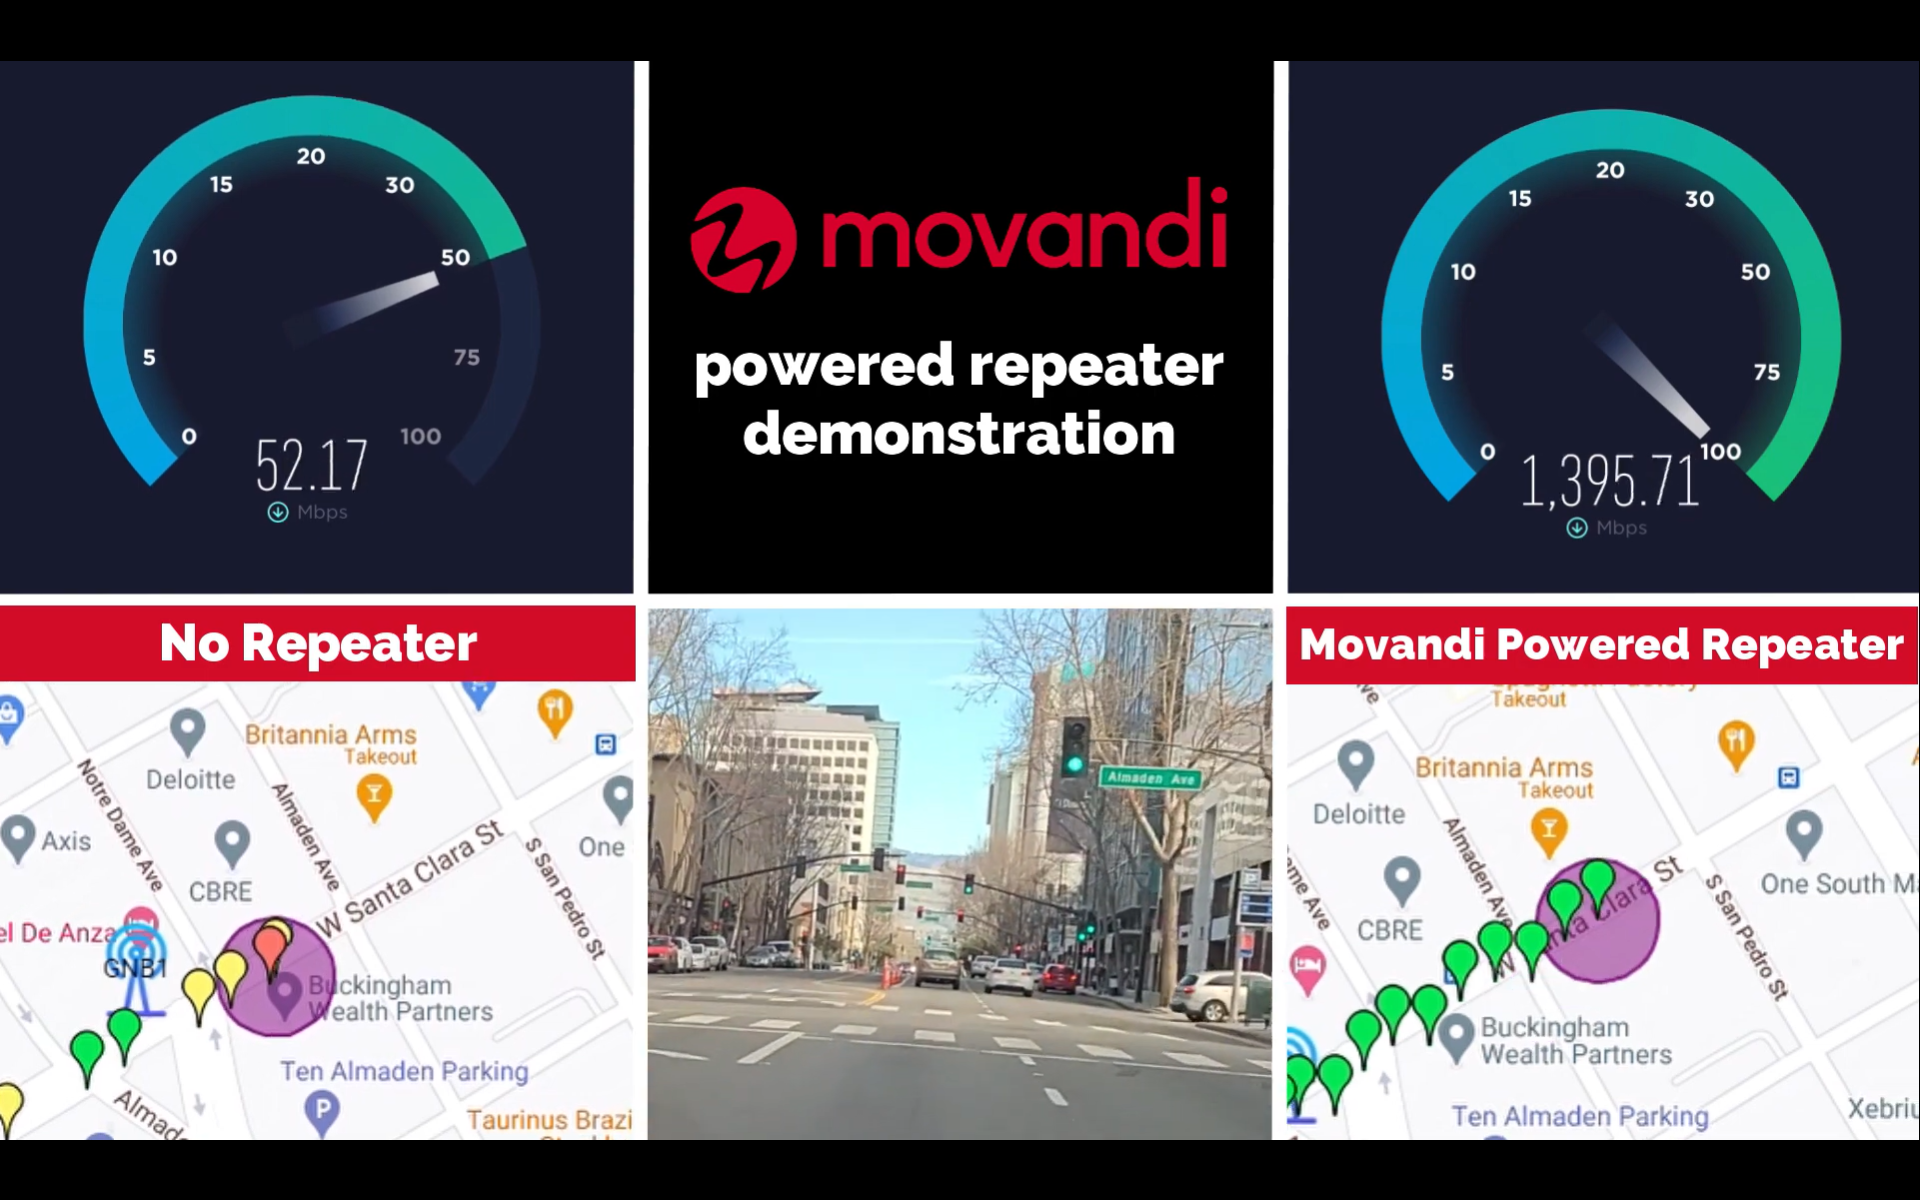 ทำสำเร็จแล้วเครื่องทะลุผนังรถยนต์ Movandi สาธิตเทคโนโลยี 5G mmWave เพื่อใช้งาน C-V2X ทำความเร็ว 1.5 Gbps WiFi